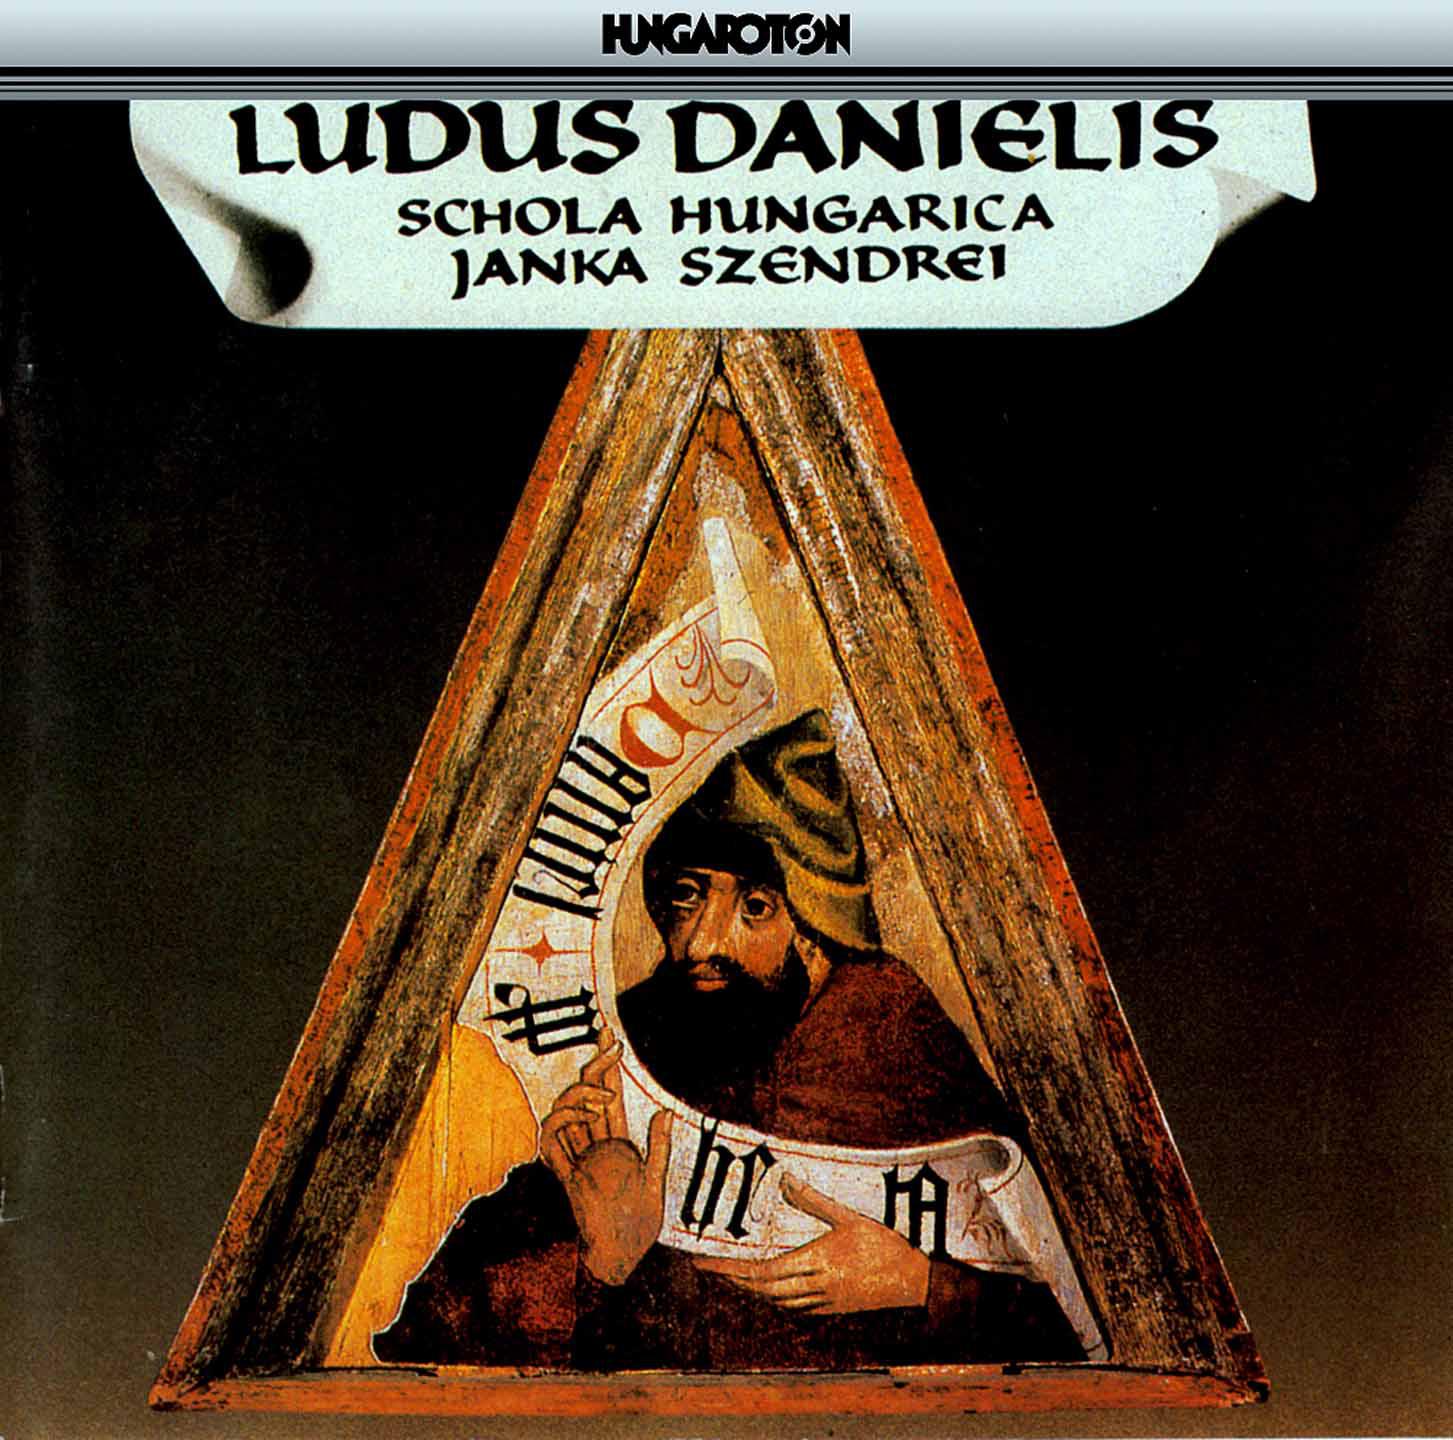 Schola Hungarica - Ludus Danielis (the Play of Daniel) [Egerton Manuscript 2615]:Te ne putas - Rex in aeternum vive! - Danielem educite